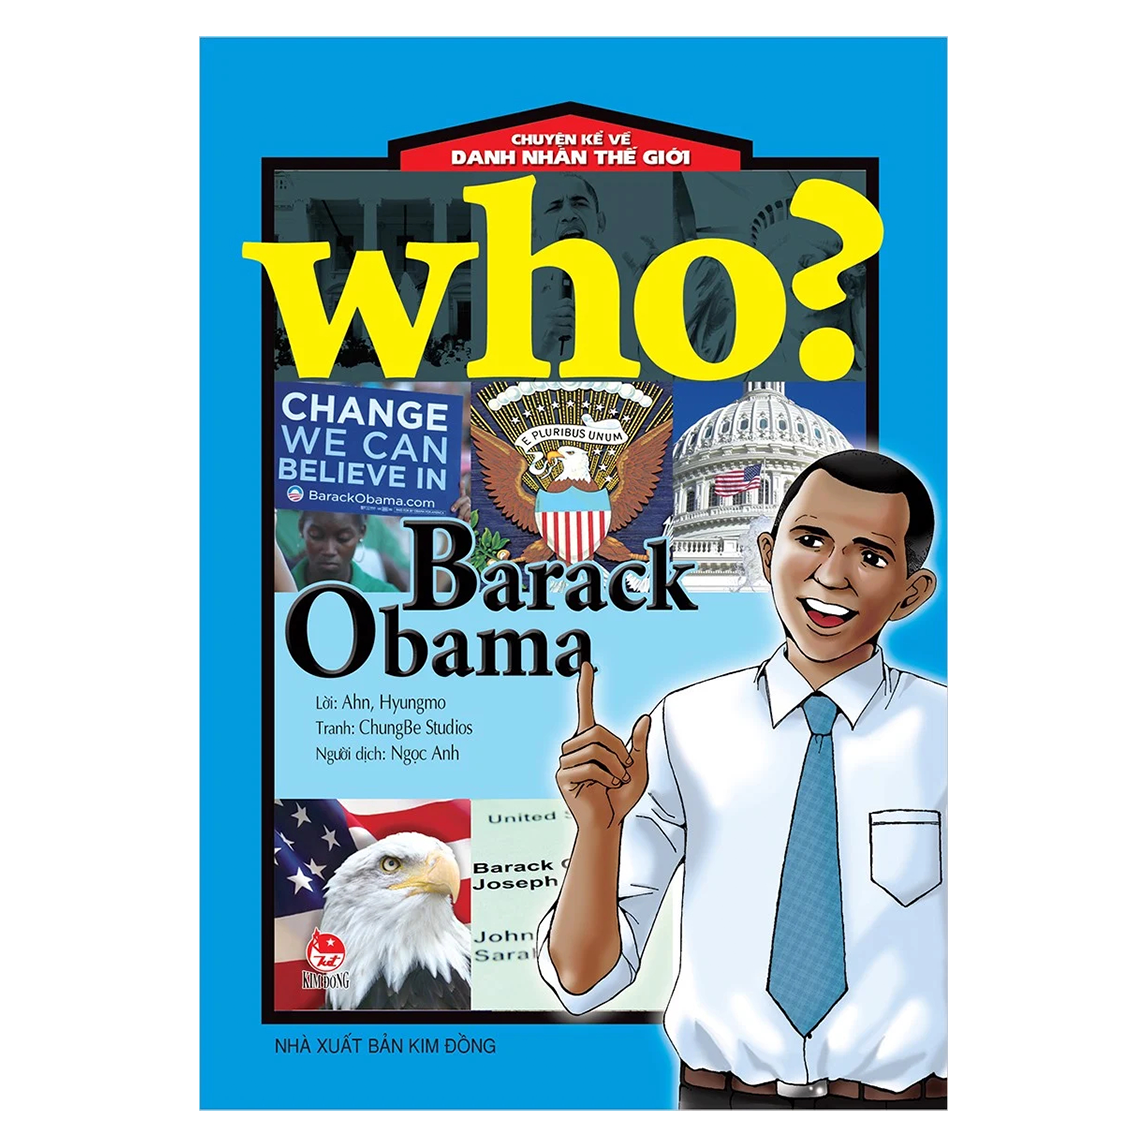 Who? Chuyện Kể Về Danh Nhân Thế Giới: Barack Obama